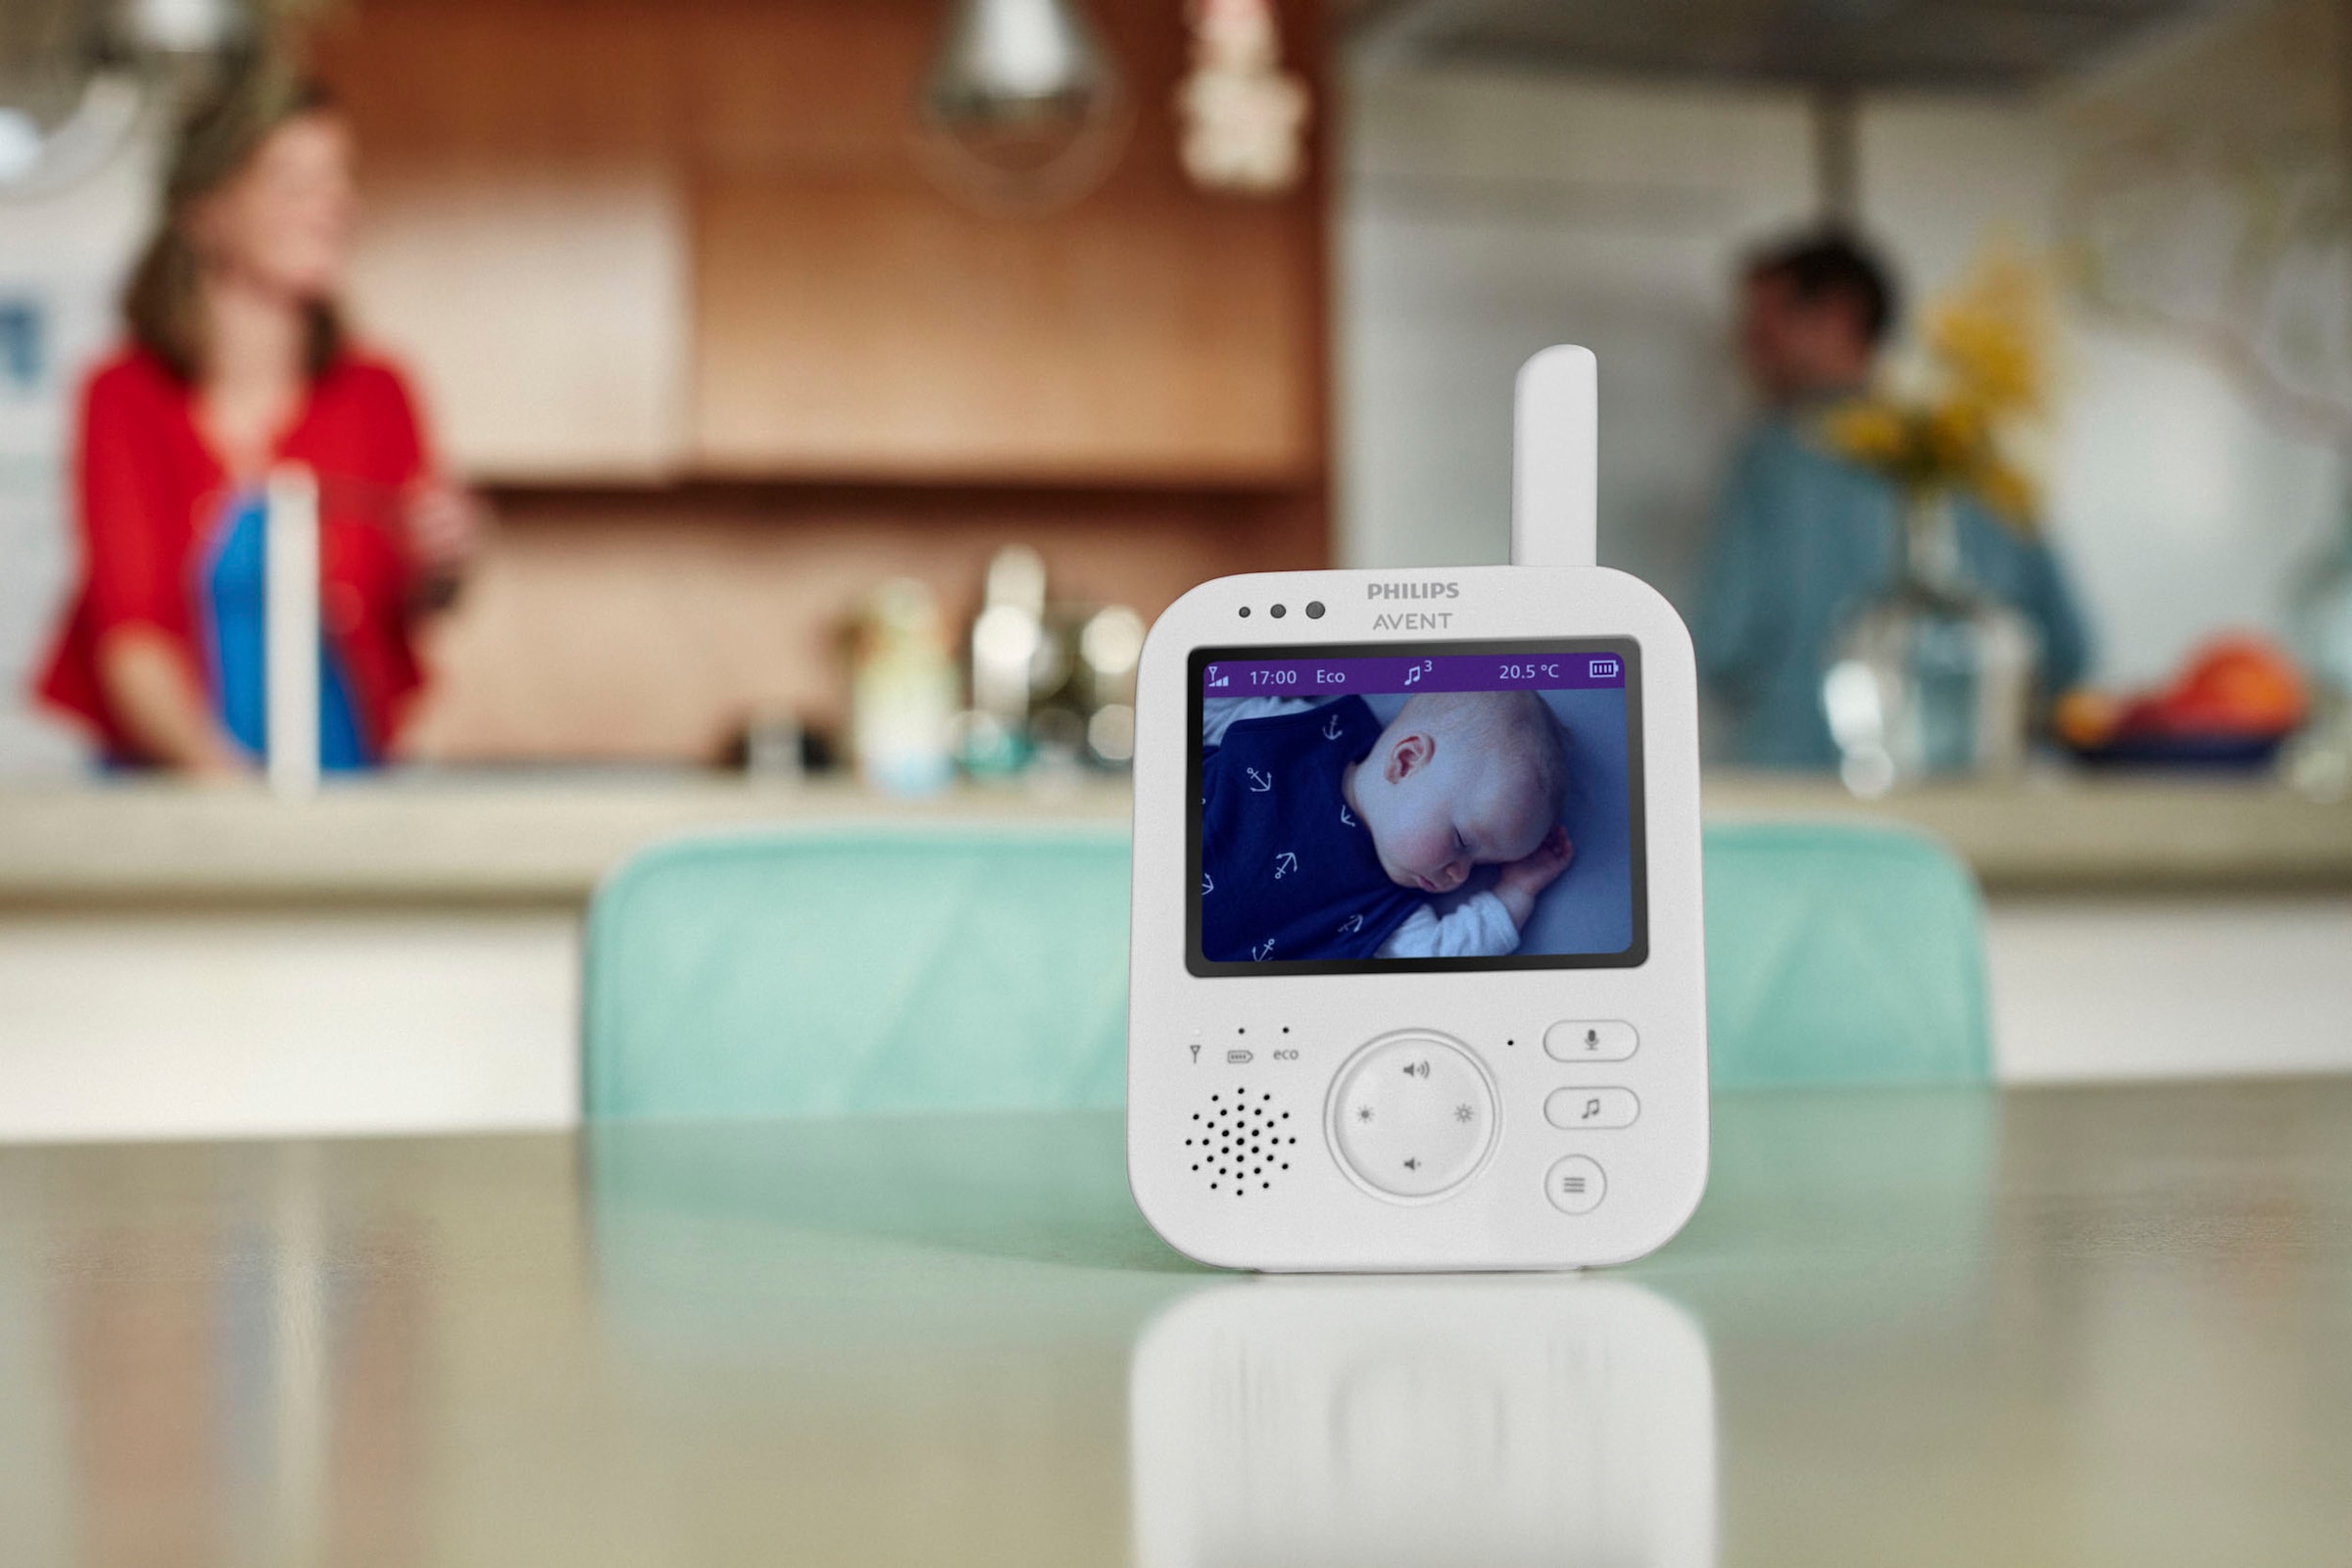 Philips AVENT Babyphone »Premium SCD892/26 Video«, mit Farbbildschirm, Reichweite von 300 Metern und Gegensprechfunktion